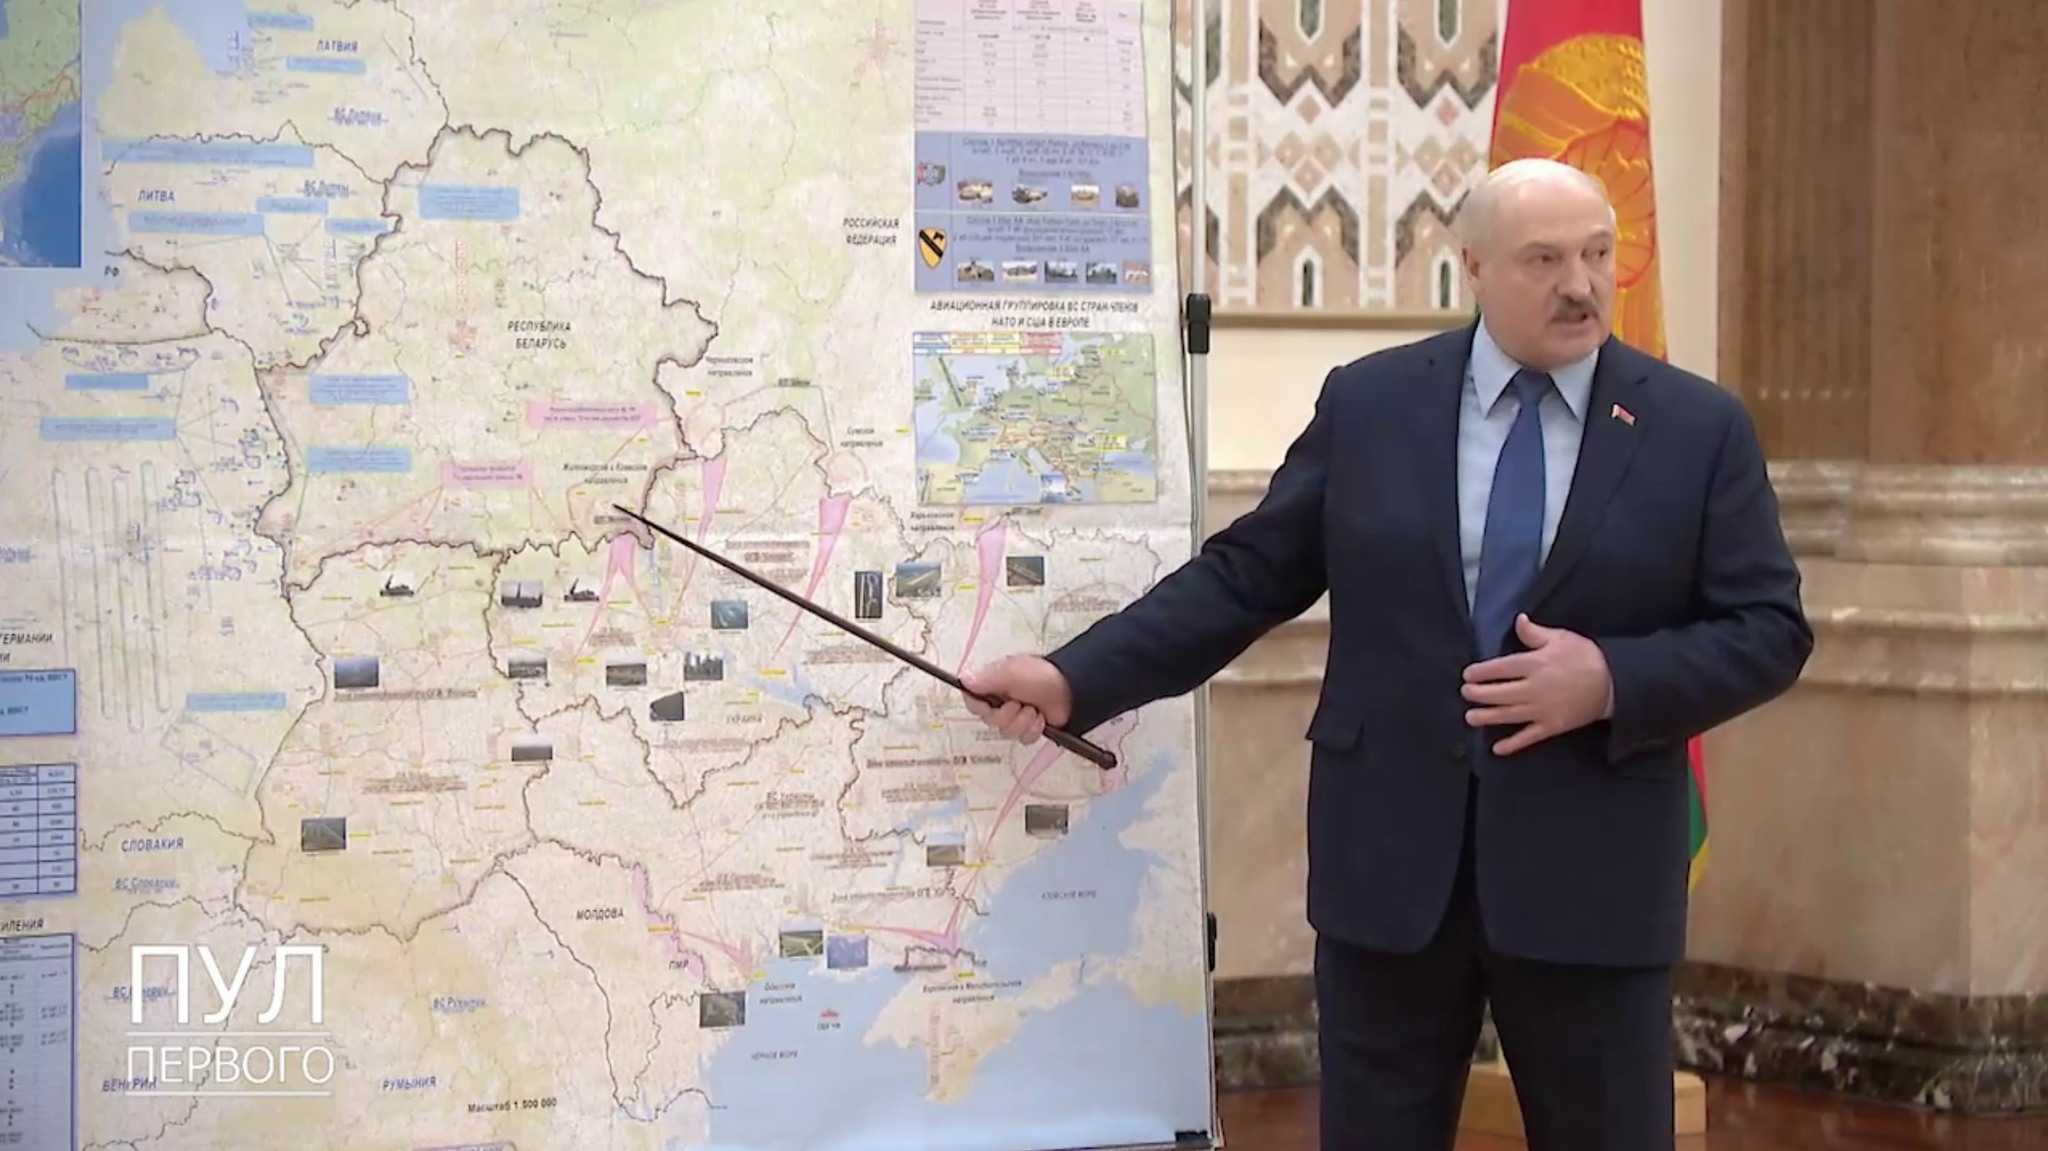 Și Moldova ocupată de ruși? Harta publicată de dictatorul Lukașenko 2